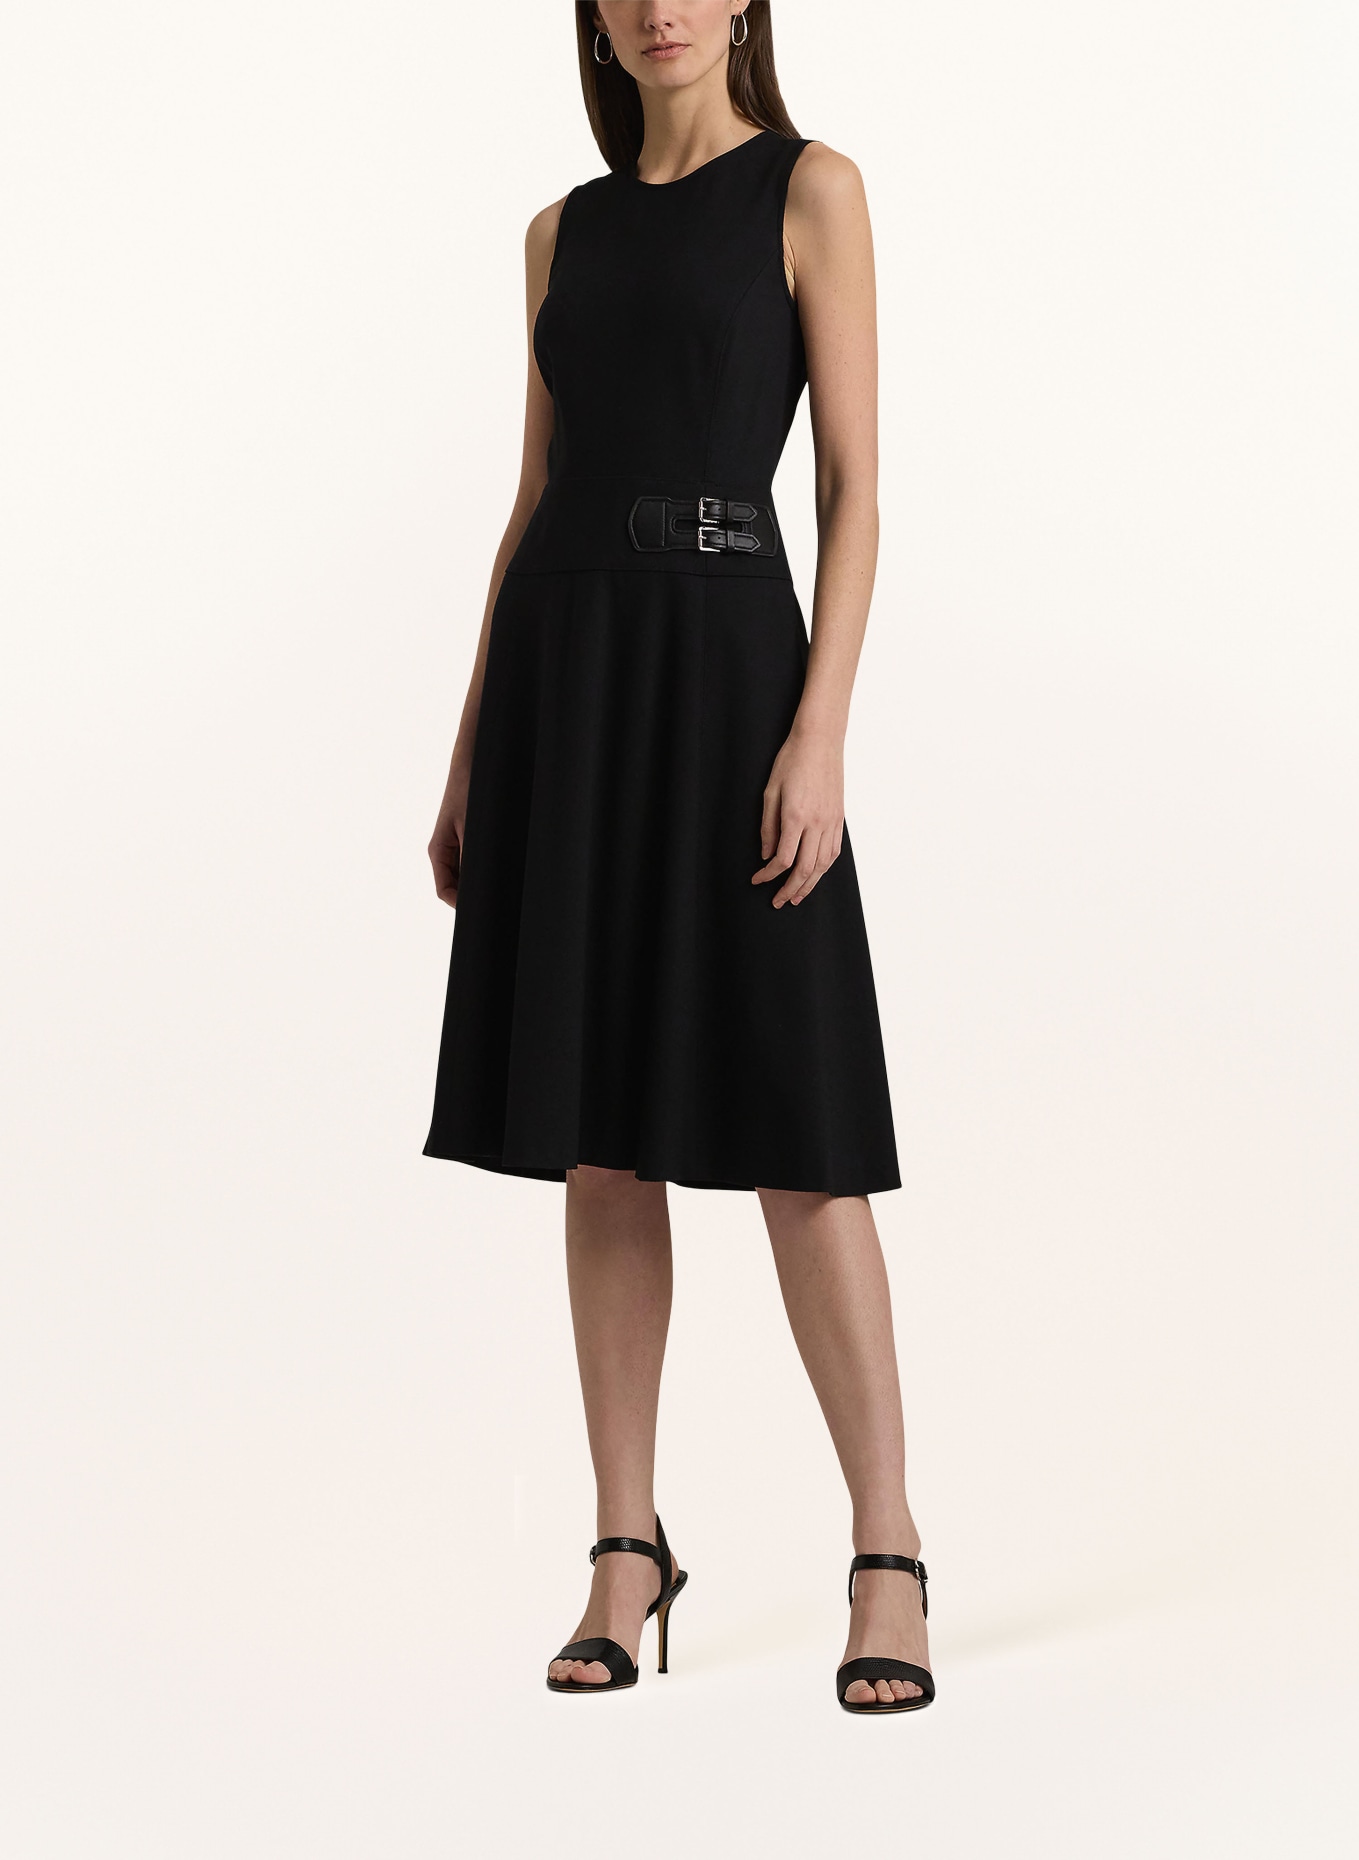 LAUREN RALPH LAUREN Jersey dress, Color: BLACK (Image 2)